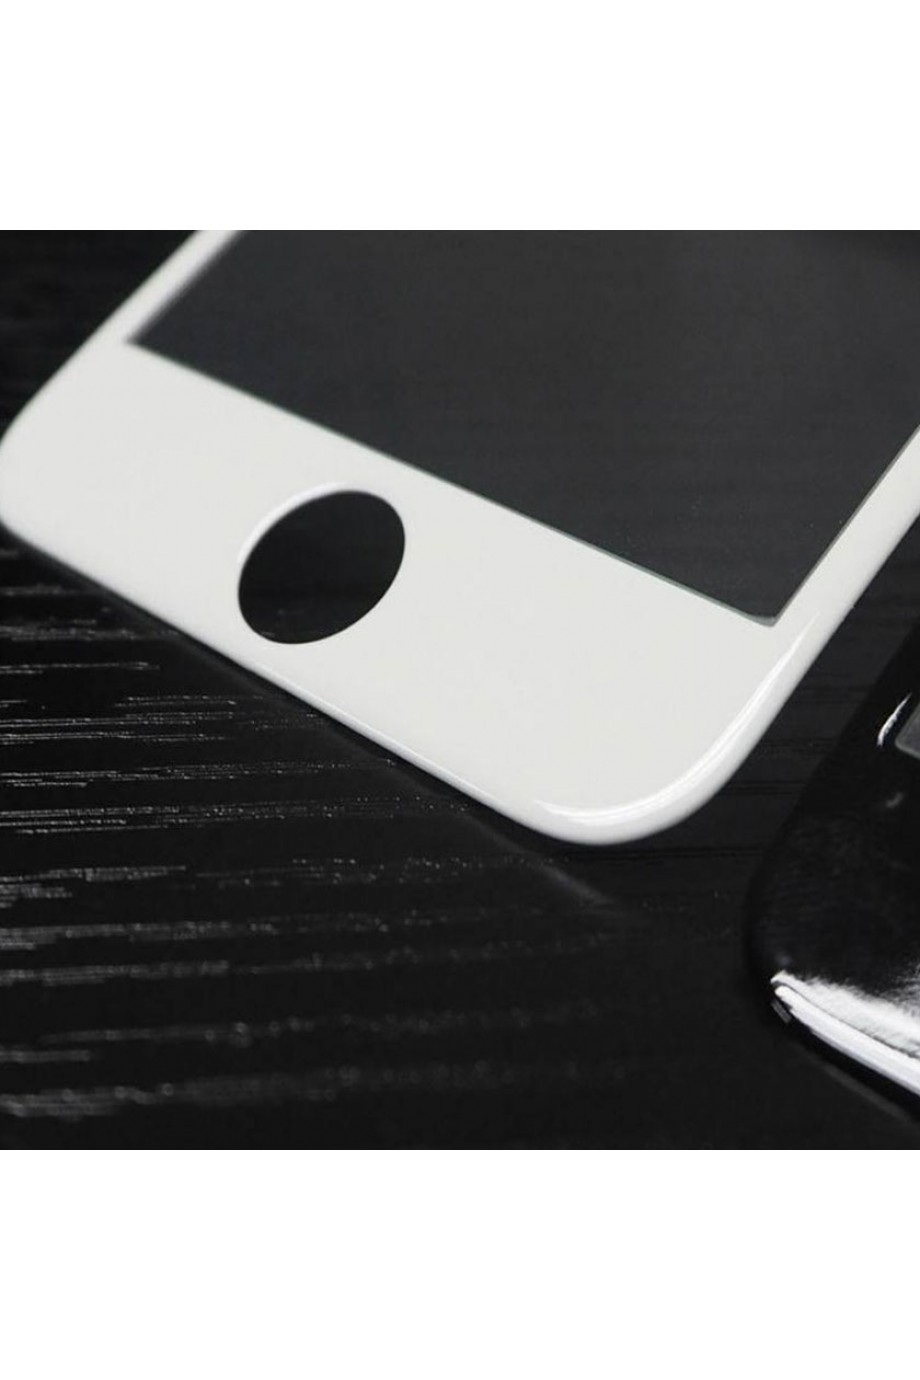 Защитное стекло 5D Mikomo для iPhone 6, белая рамка, полный клей